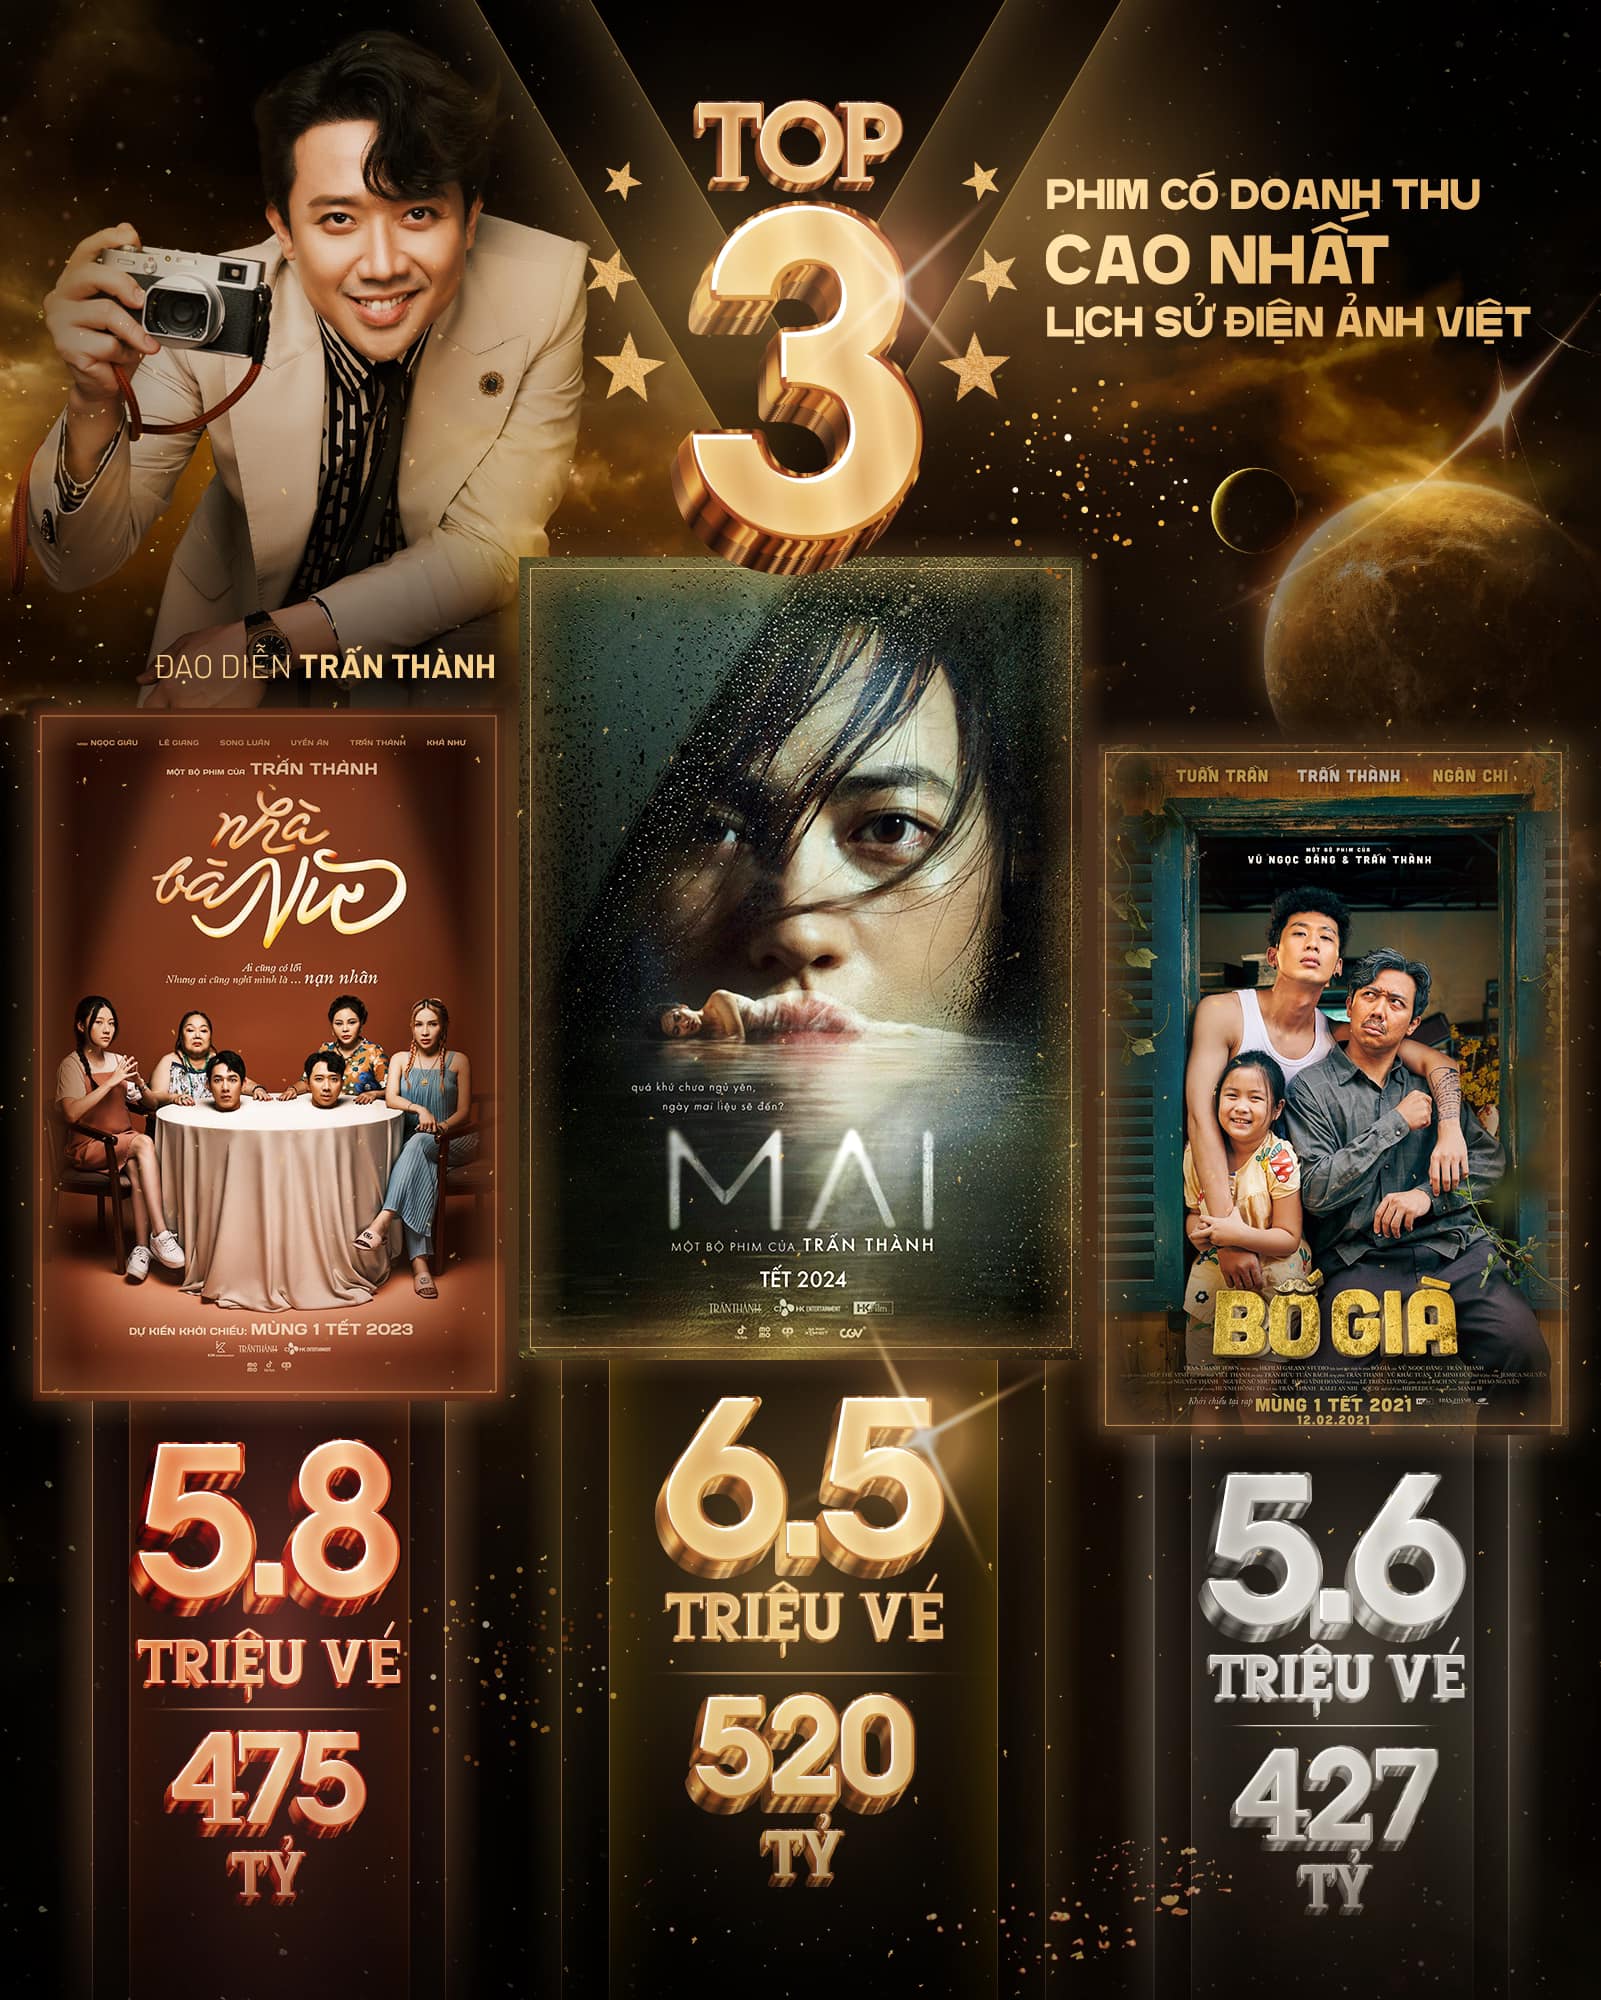 Top 3 phim có doanh thu cao nhất của điện ảnh Việt đều thuộc về Trấn Thành.